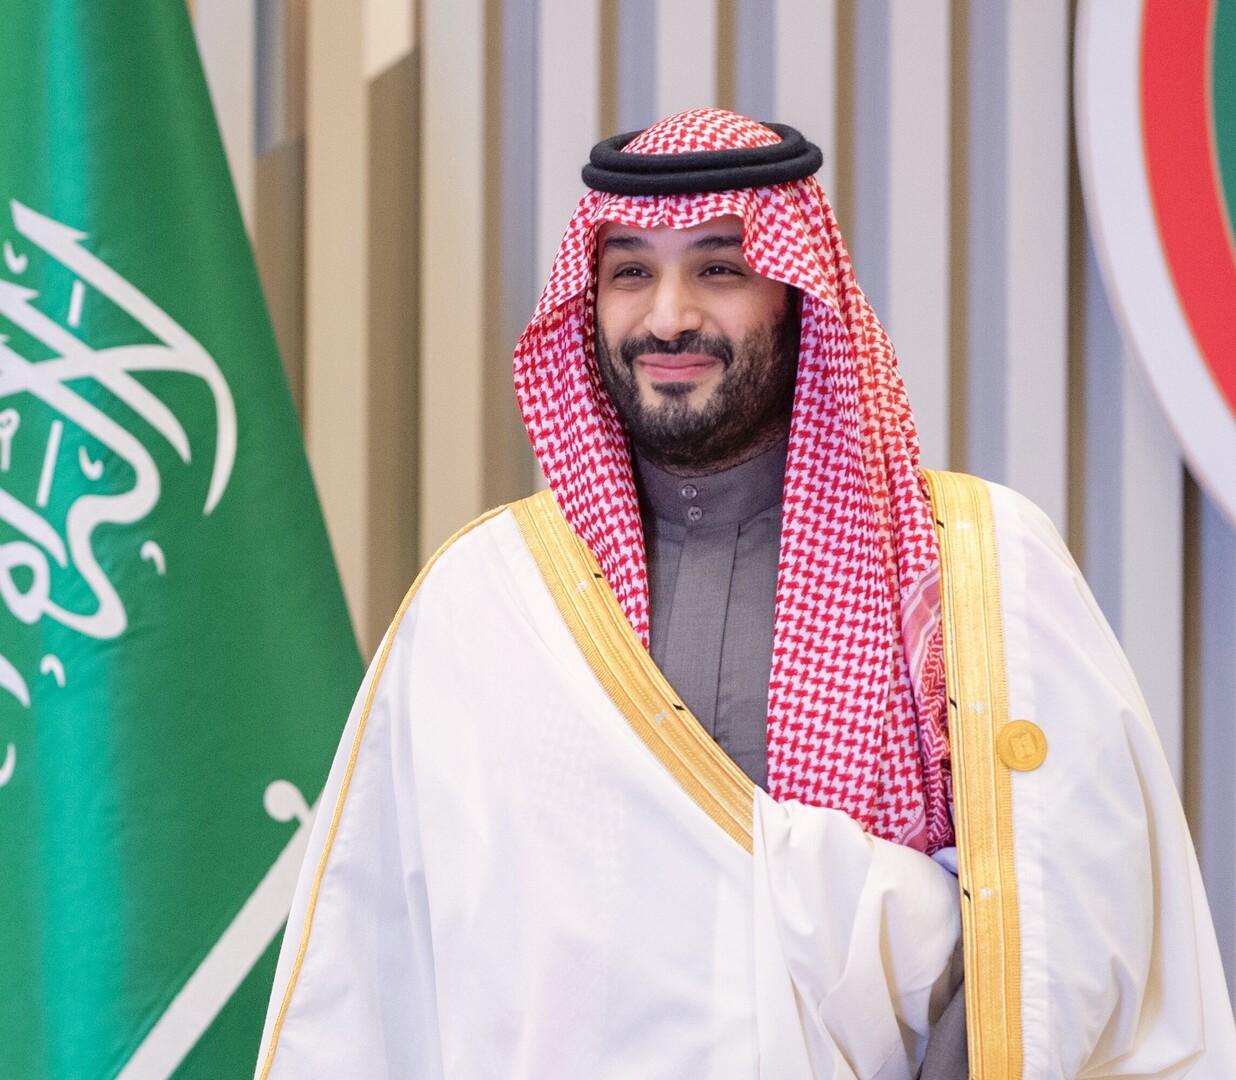 أمير سعودي تعليقا على تصريحات ولي العهد: جميع من اعتقد بإمكانية تهميش المملكة تراجع عن أوهامه